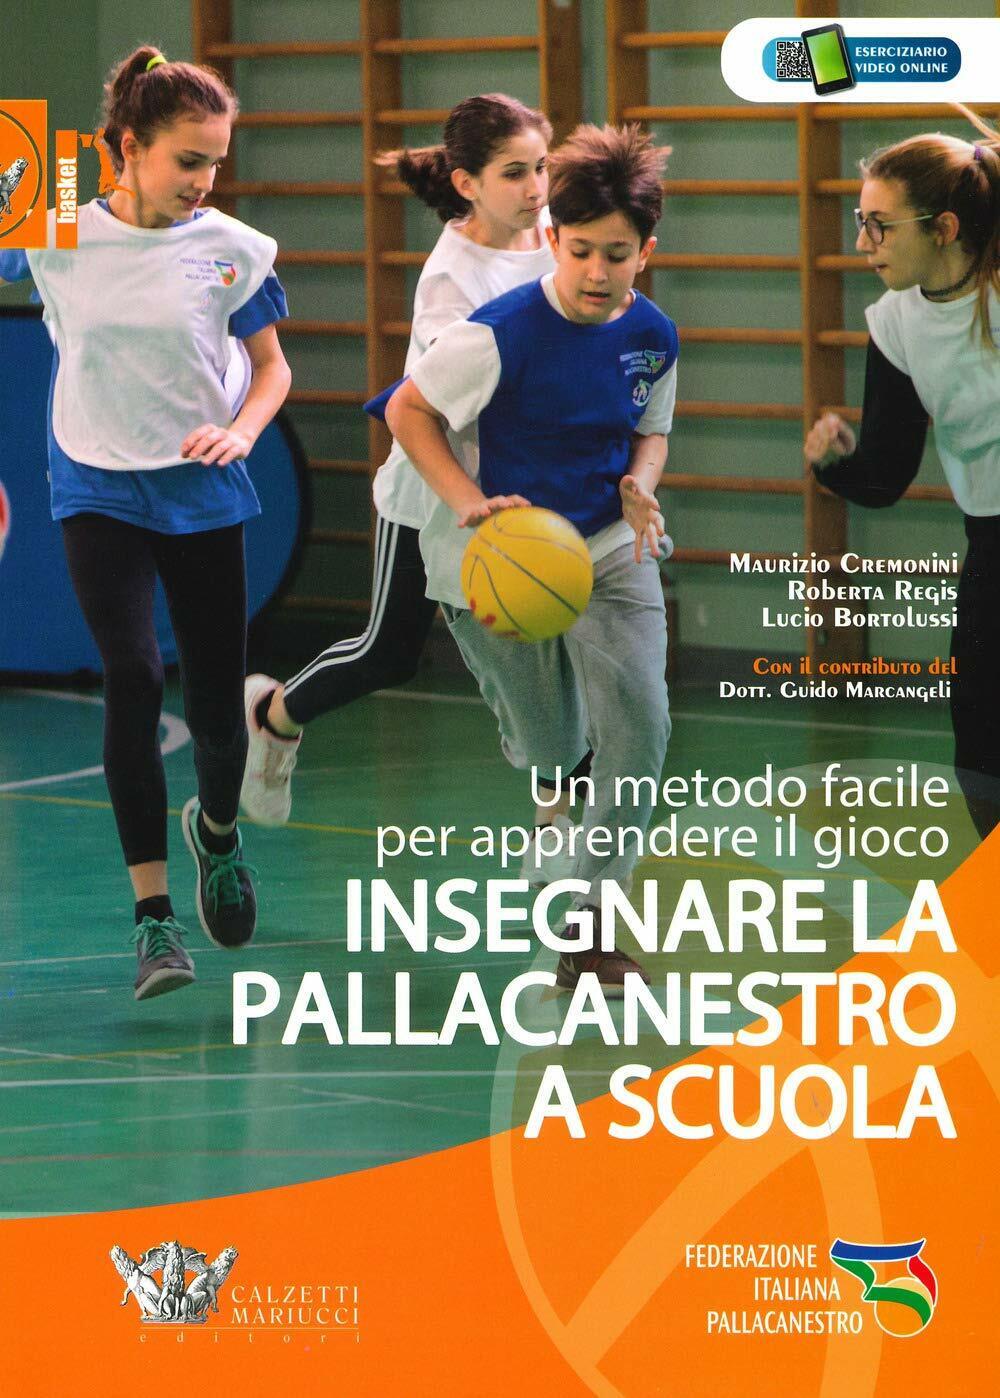 Insegnare la pallacanestro a scuola - Calzetti Mariucci, 2019 libro usato